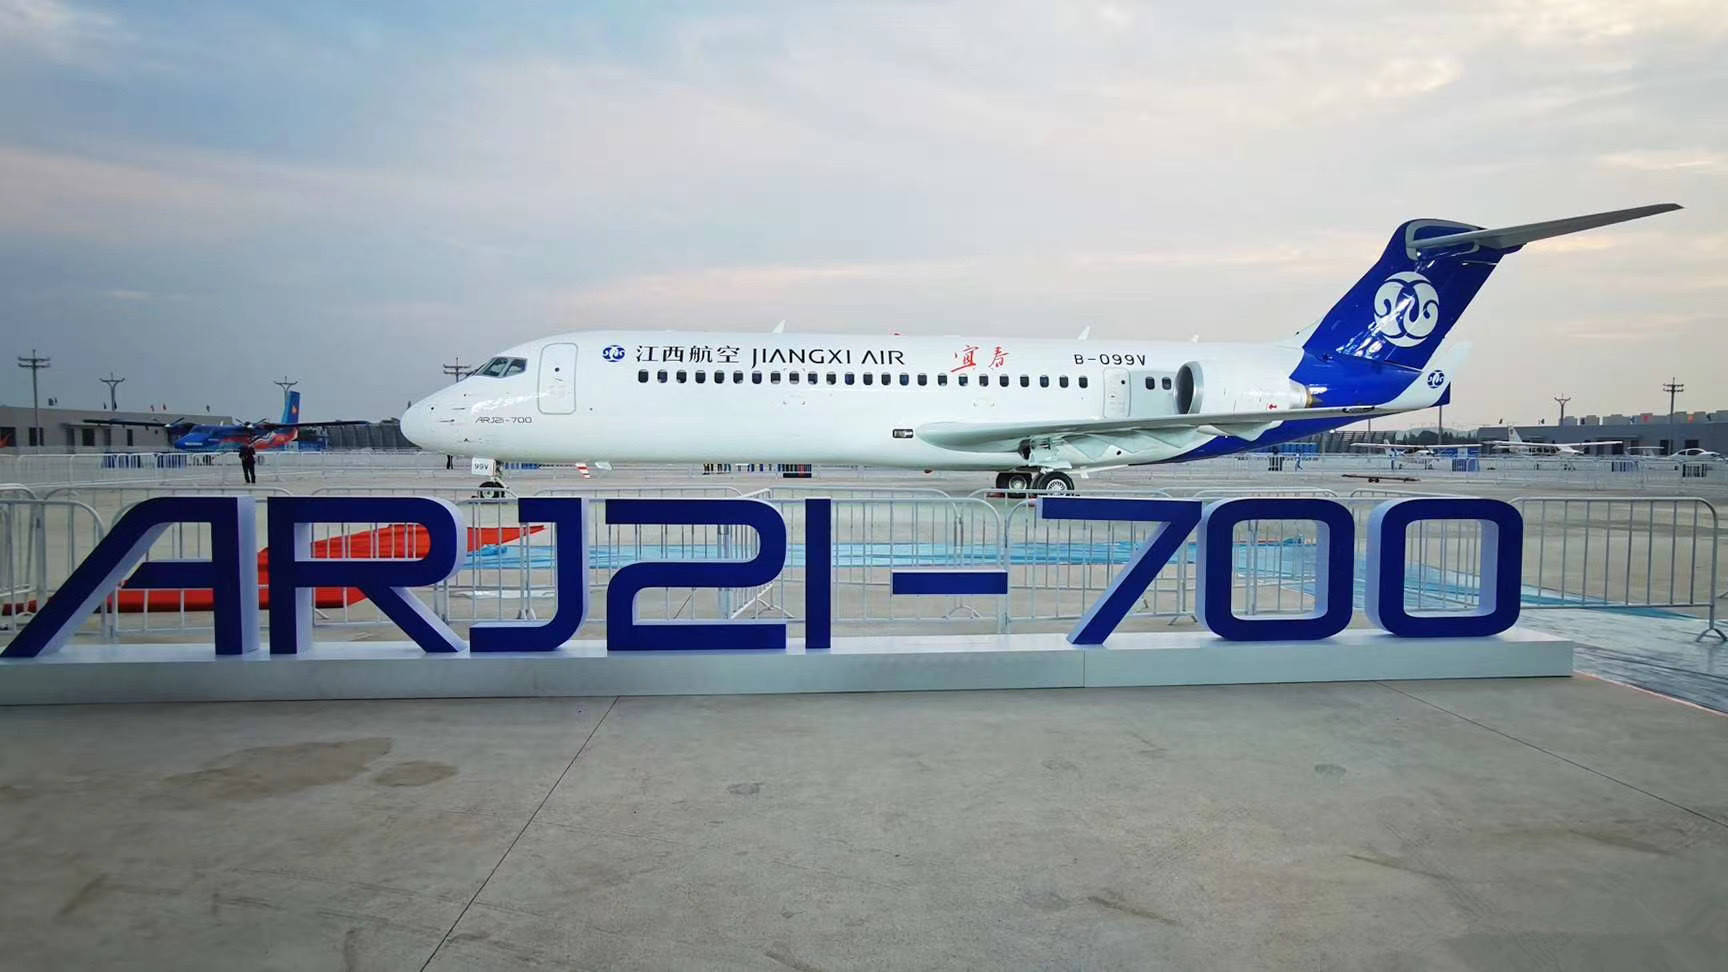 原创交付38架,载客超130万人次—国产arj21客机运营四年,交出满意答卷